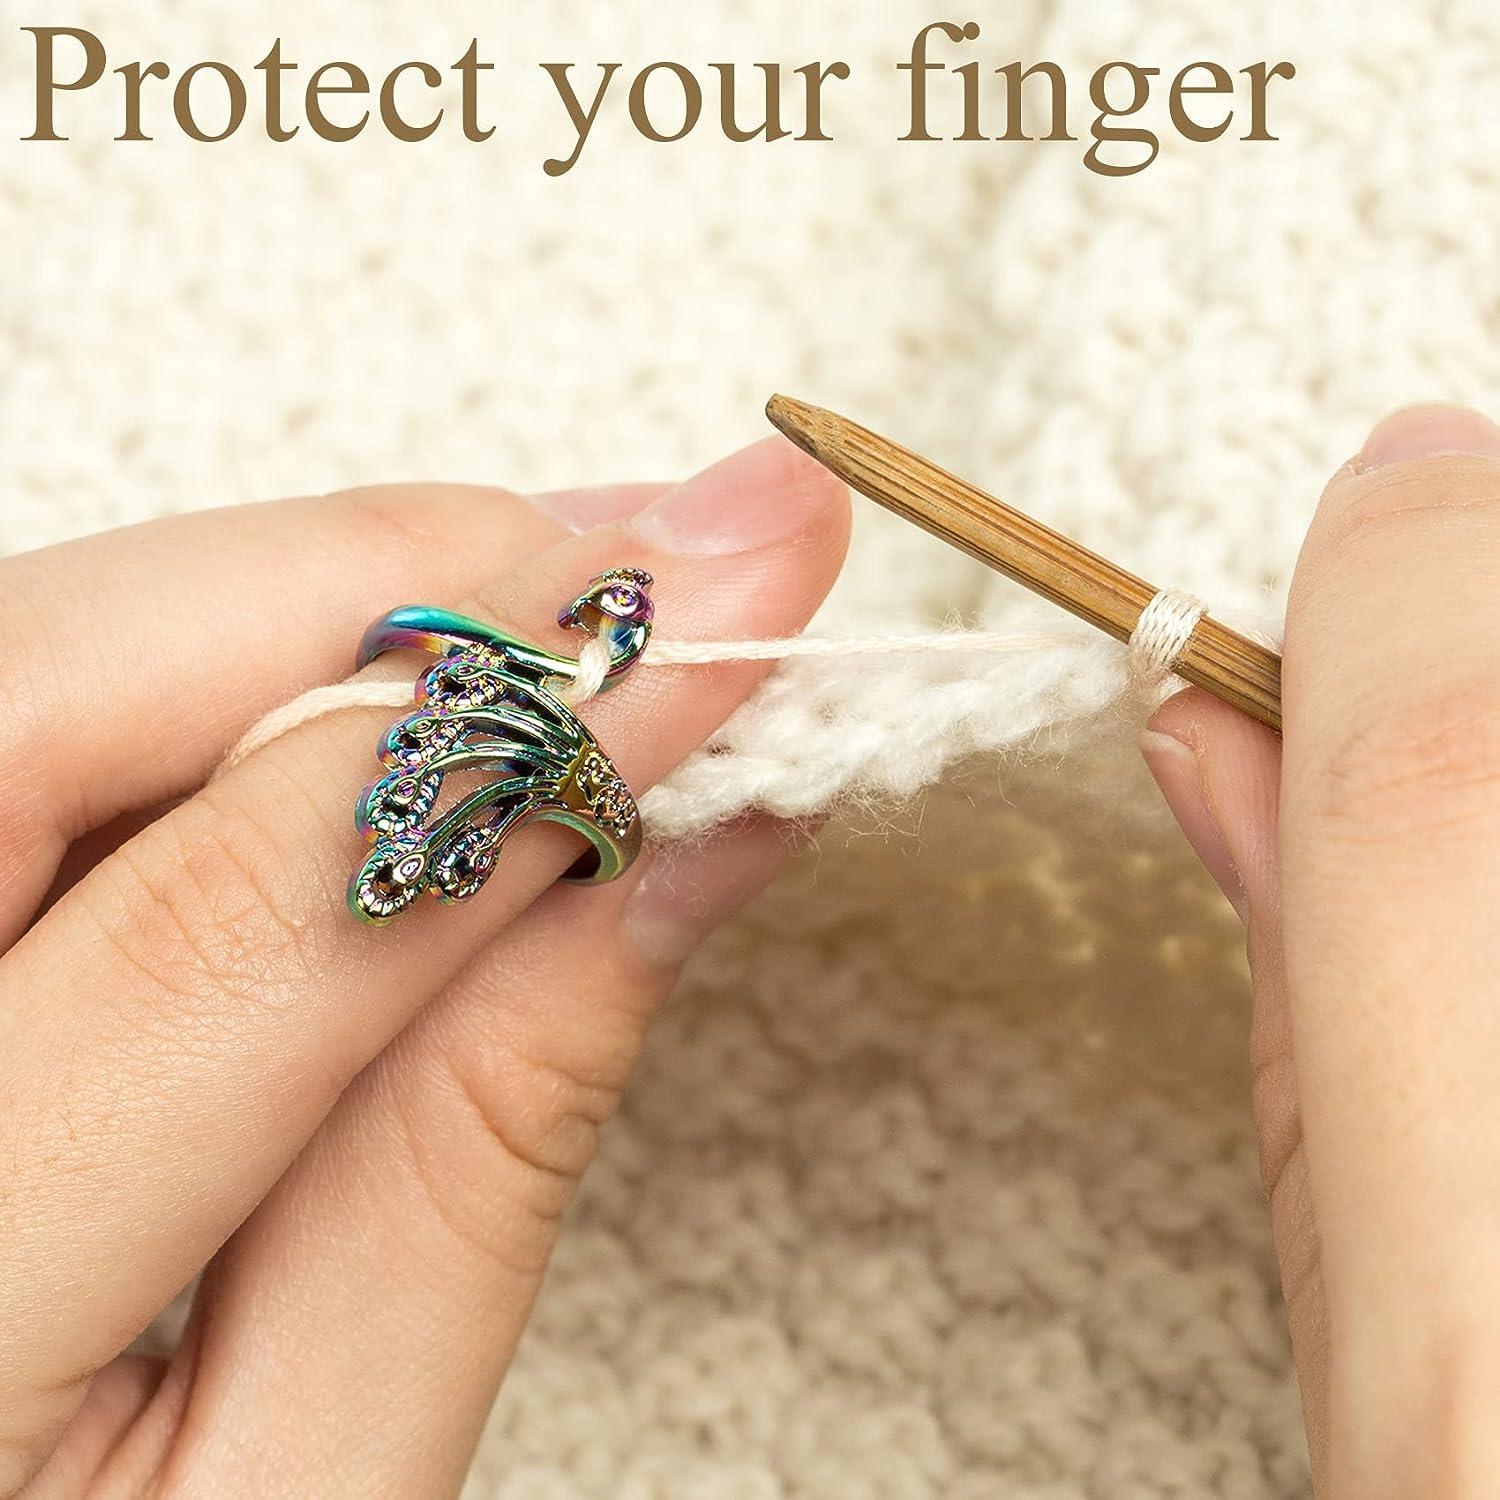 8 Pcs Crochet Ring For Finger Yarn Guide, Adjustable Crochet